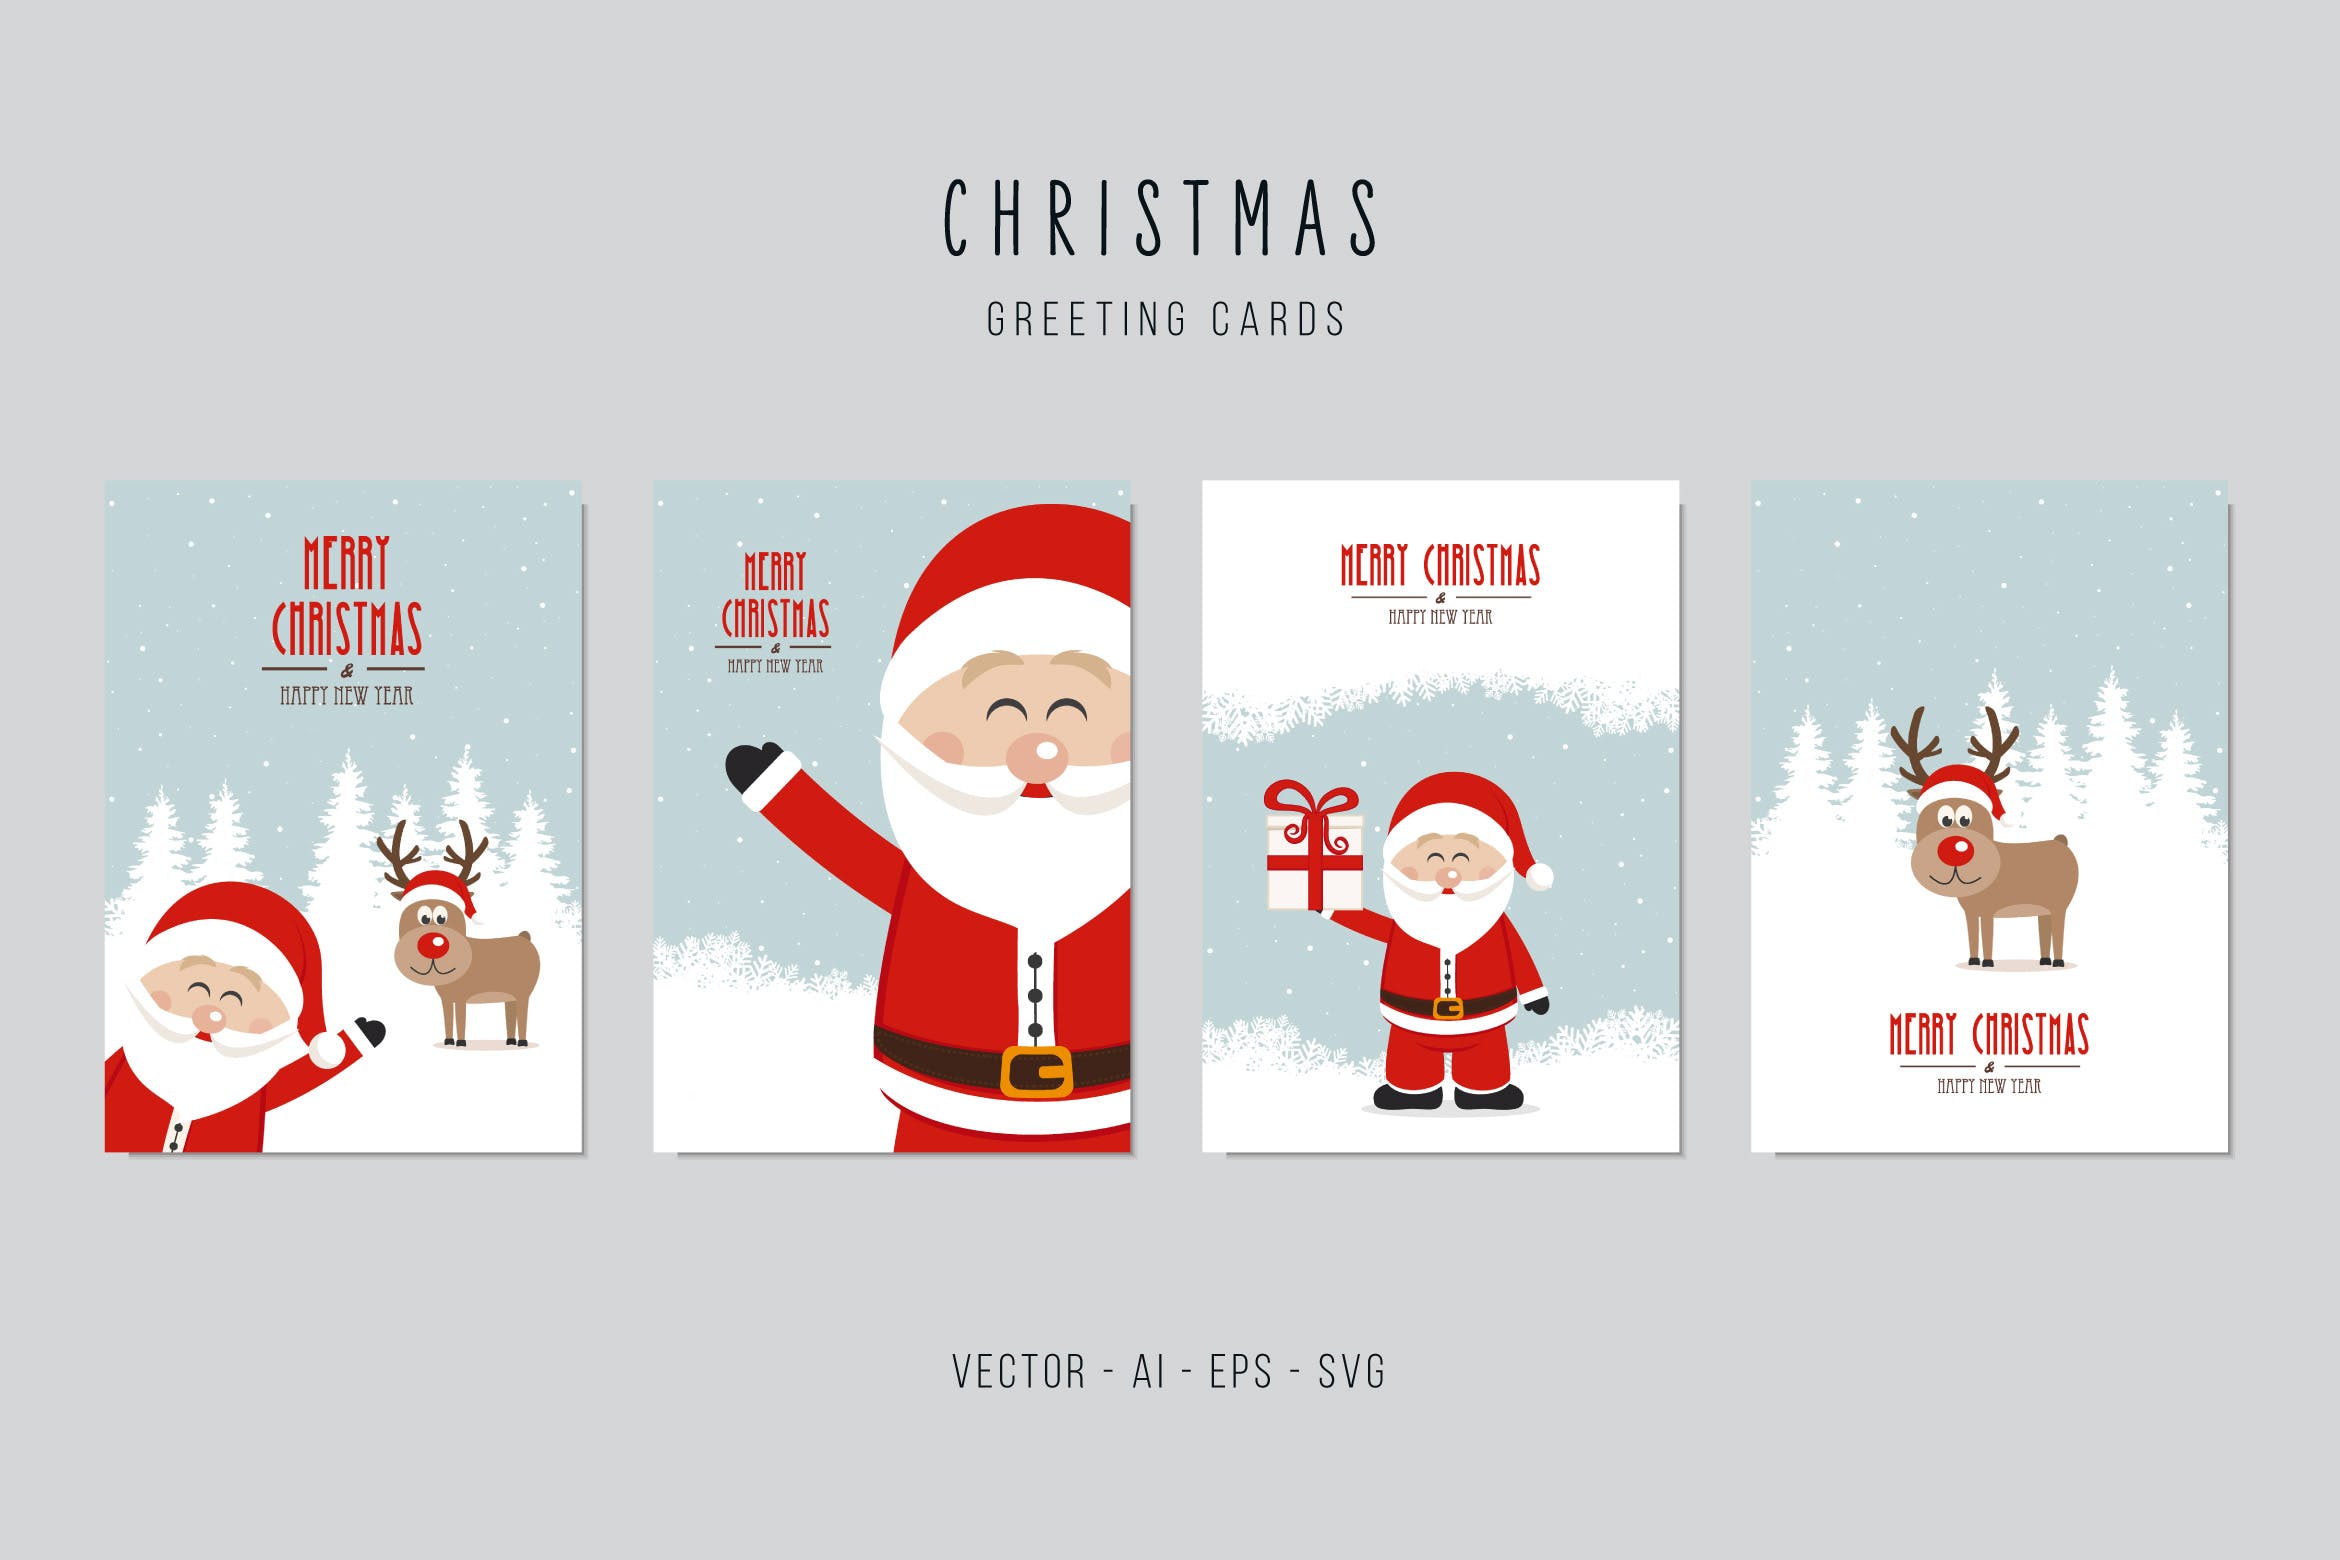 圣诞老人&驯鹿矢量圣诞节贺卡设计模板 Christmas Santa Claus and Reindeer Vector Card Set插图